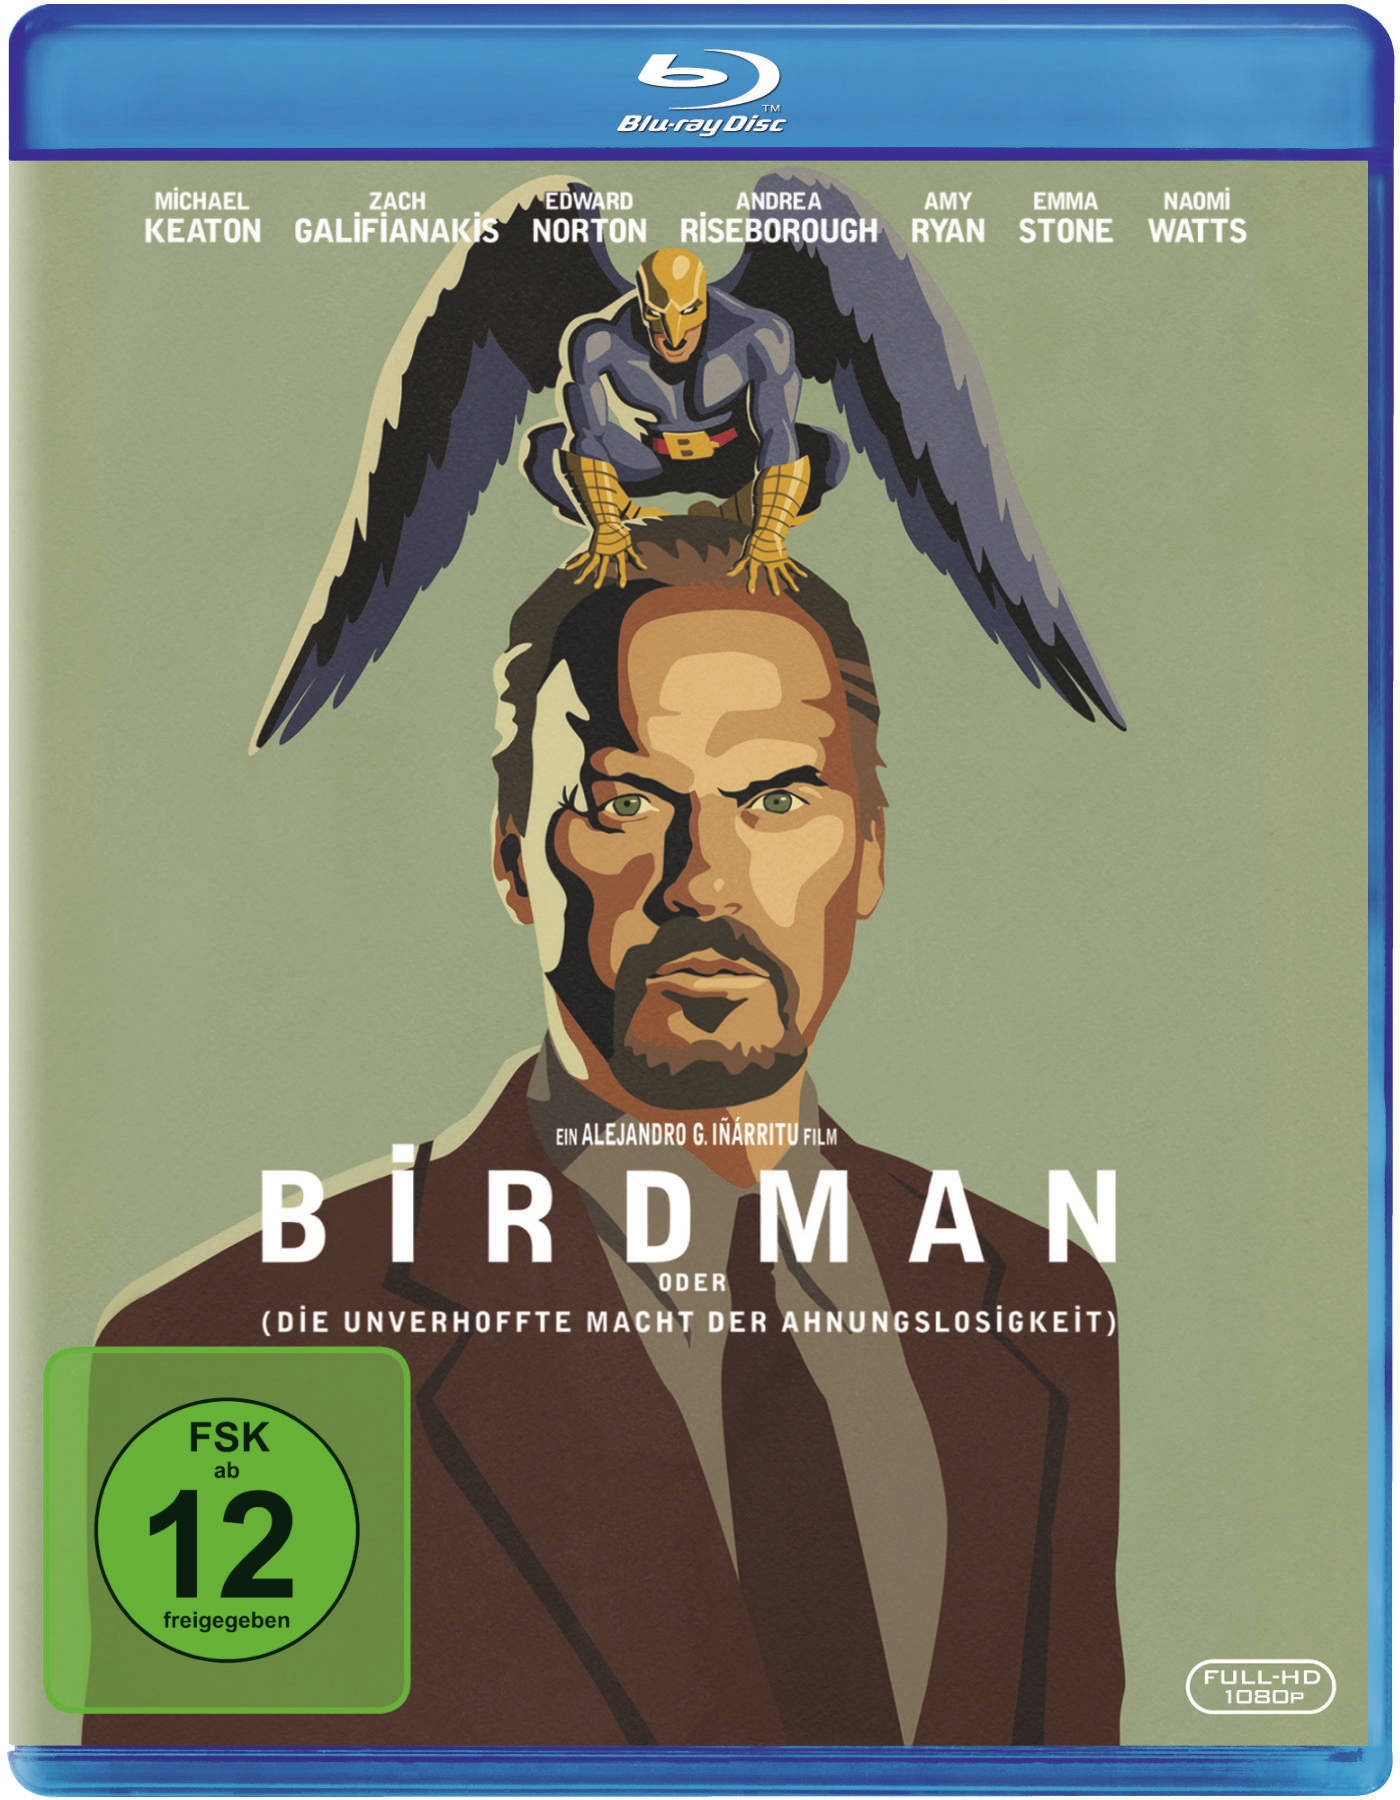 Birdman Oder (Die Unverhoffte Macht Der Ahnungslosigkeit) (Blu-ray)